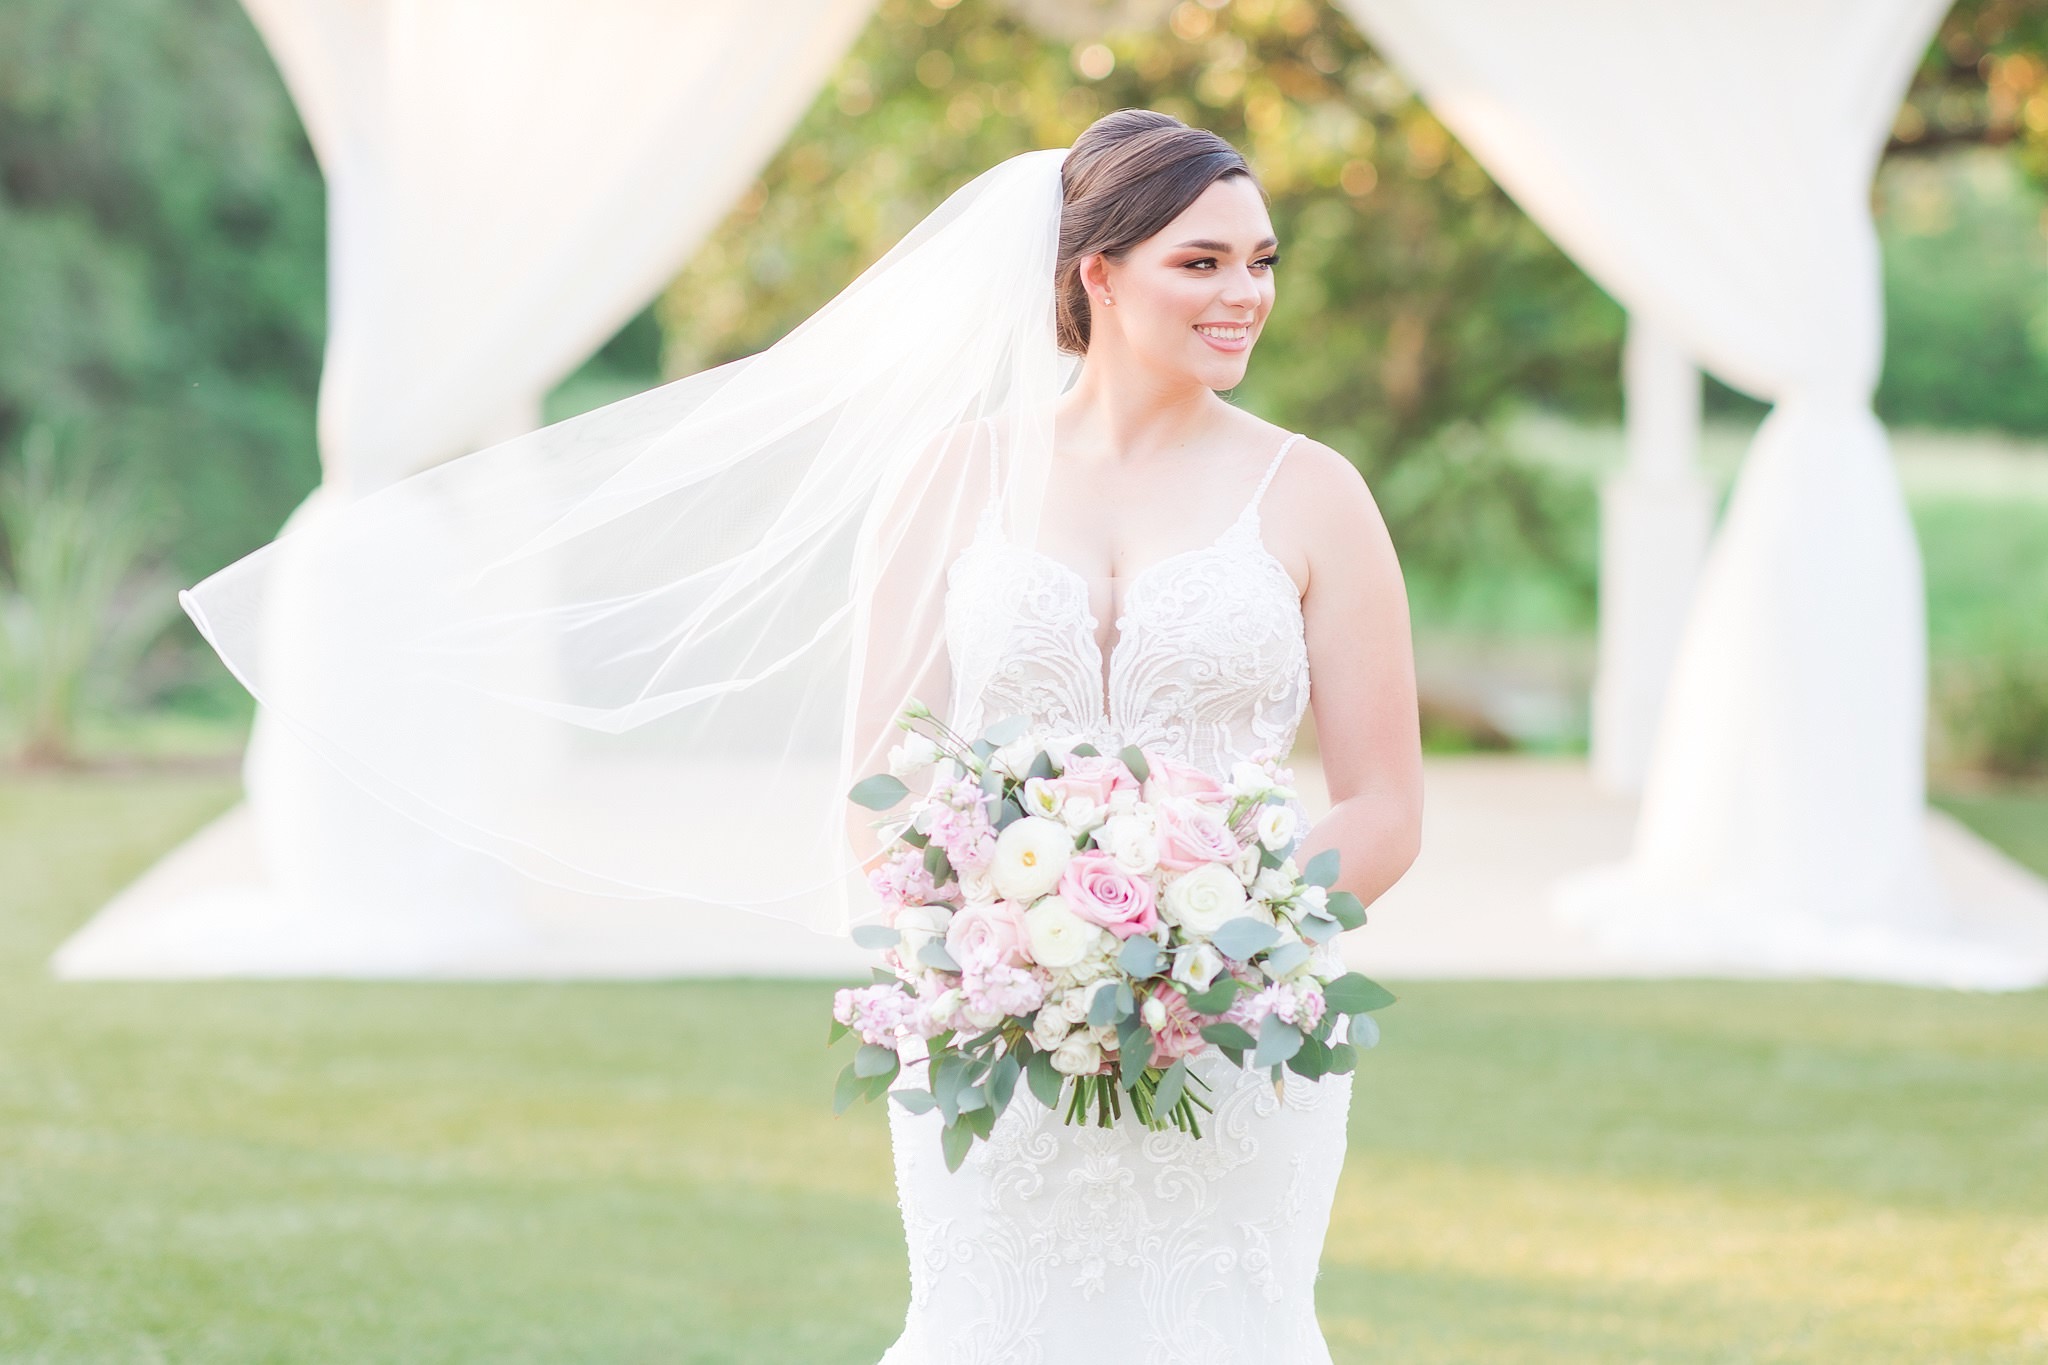 A Summer Bridal Session at Kendall Point in Boerne, TX by Dawn Elizabeth Studios, San Antonio Wedding Photographer